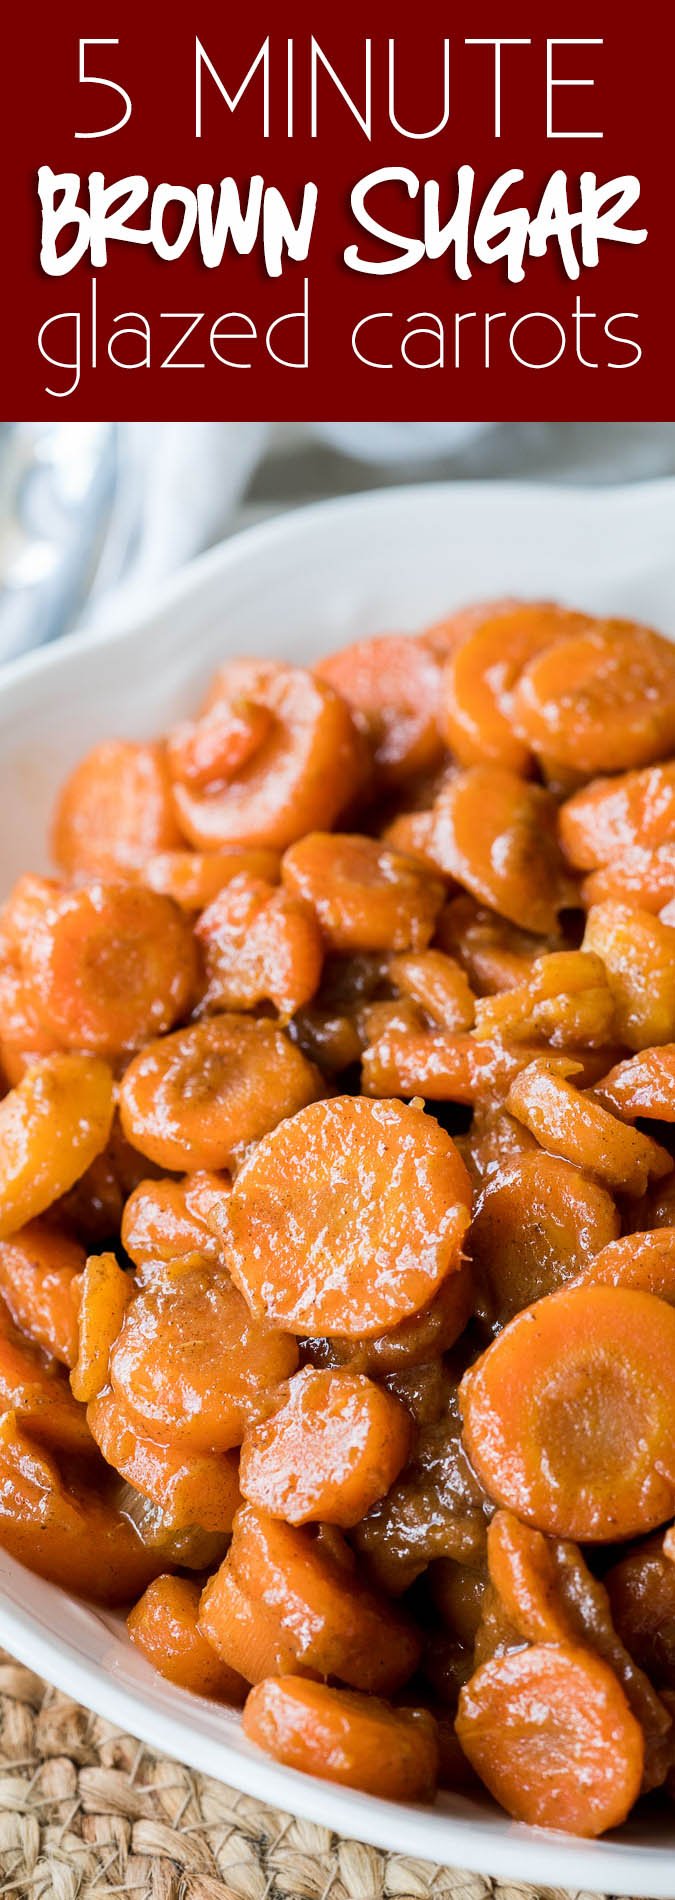 dessa bruna Sockerglasade morötter görs på bara 5 minuter med bara 5 enkla ingredienser! Perfekt för en snabb Thanksgiving sida skålen!